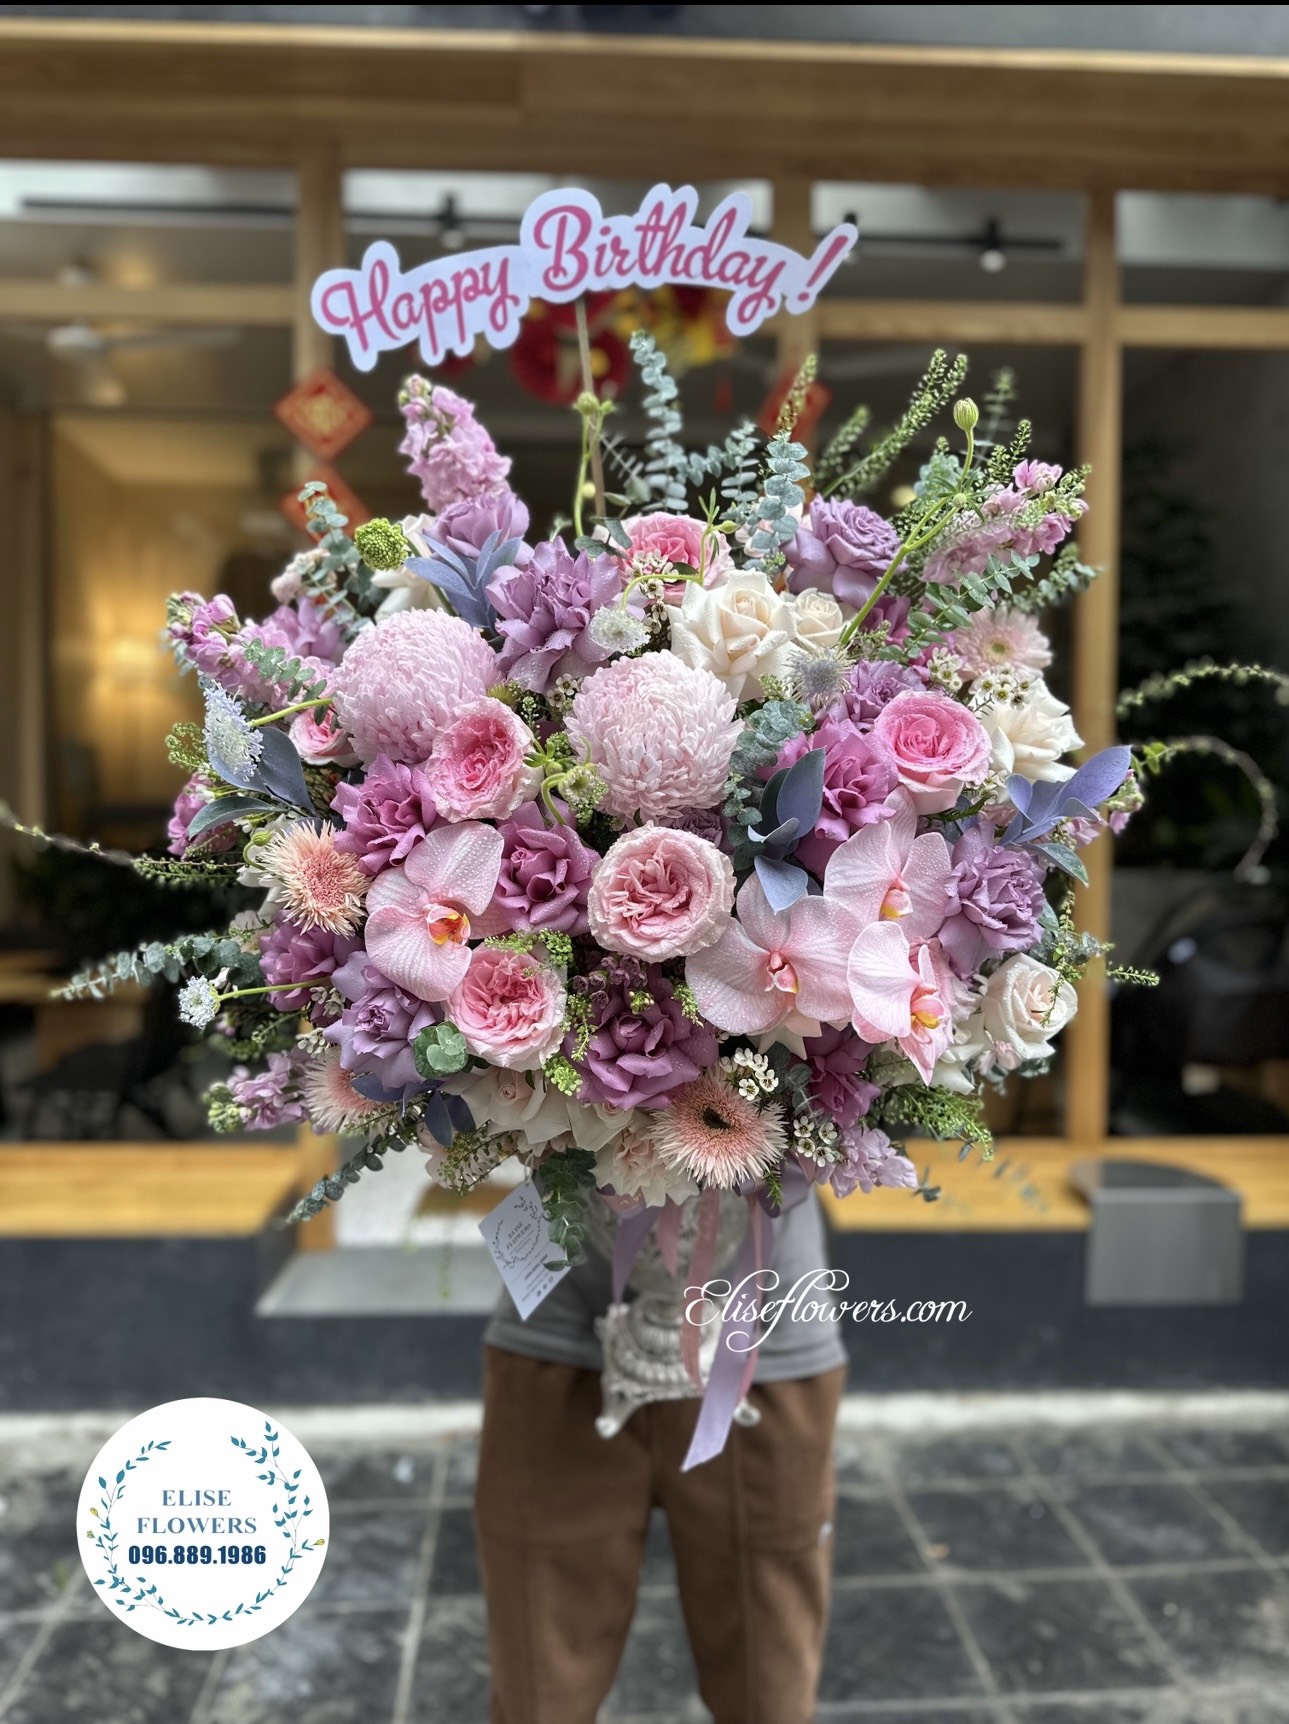 HOA SINH NHẬT QUẬN HÀ ĐÔNG | Hoa sinh nhật đẹp ở quận Hà Đông | Đặt hoa sinh nhật quận Hà Đông.